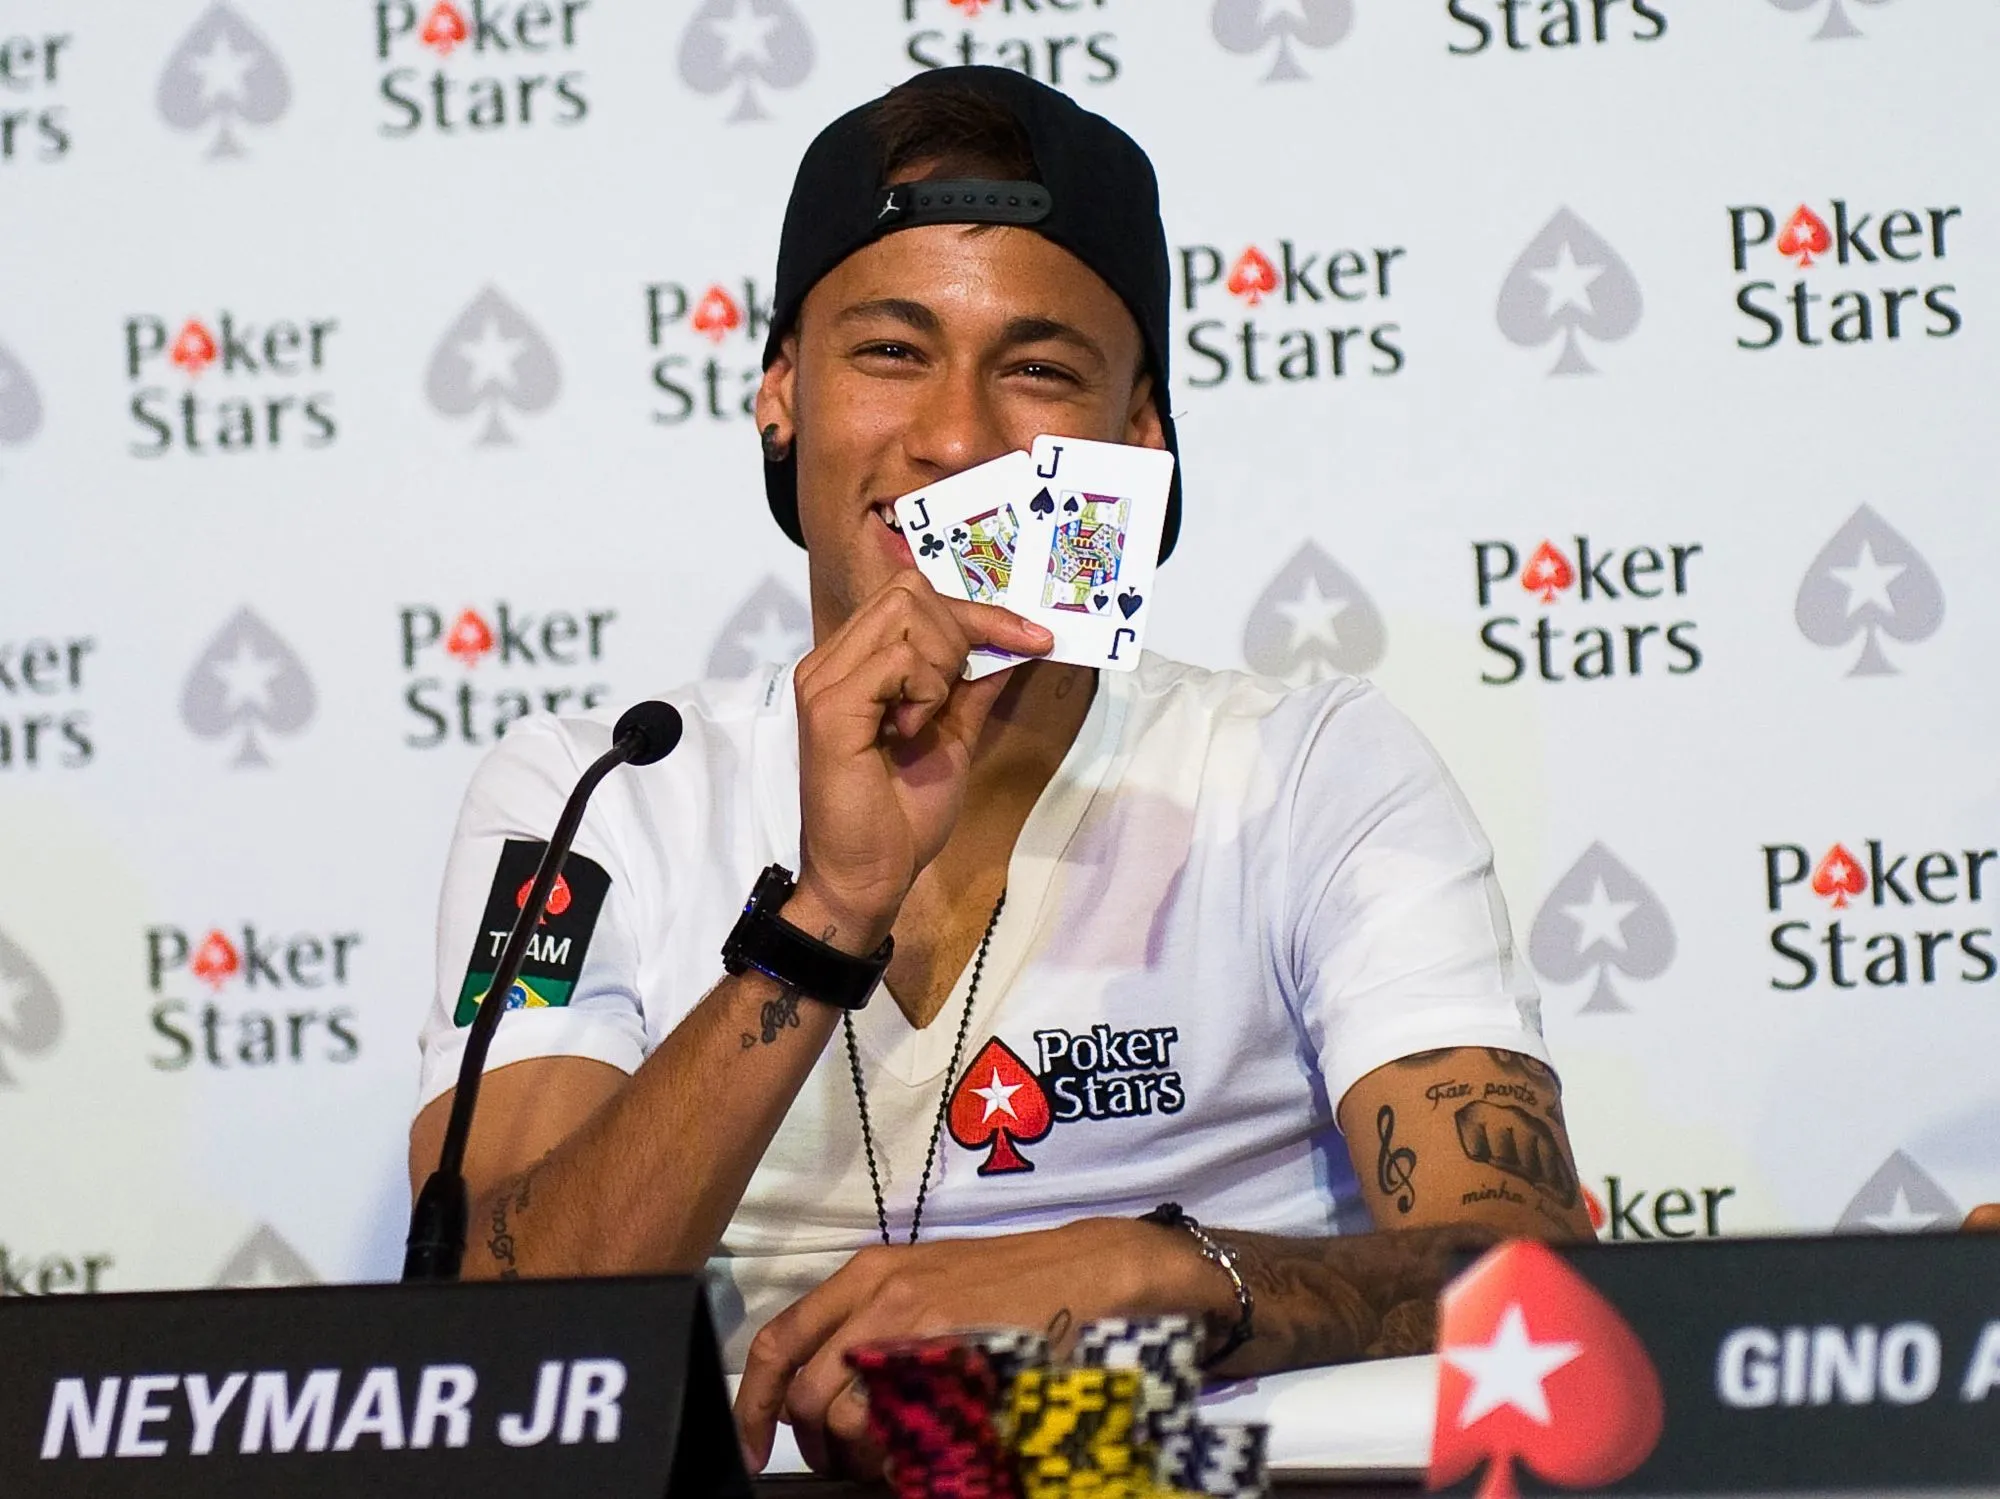 Neymar se voit devenir joueur de poker pro après sa carrière